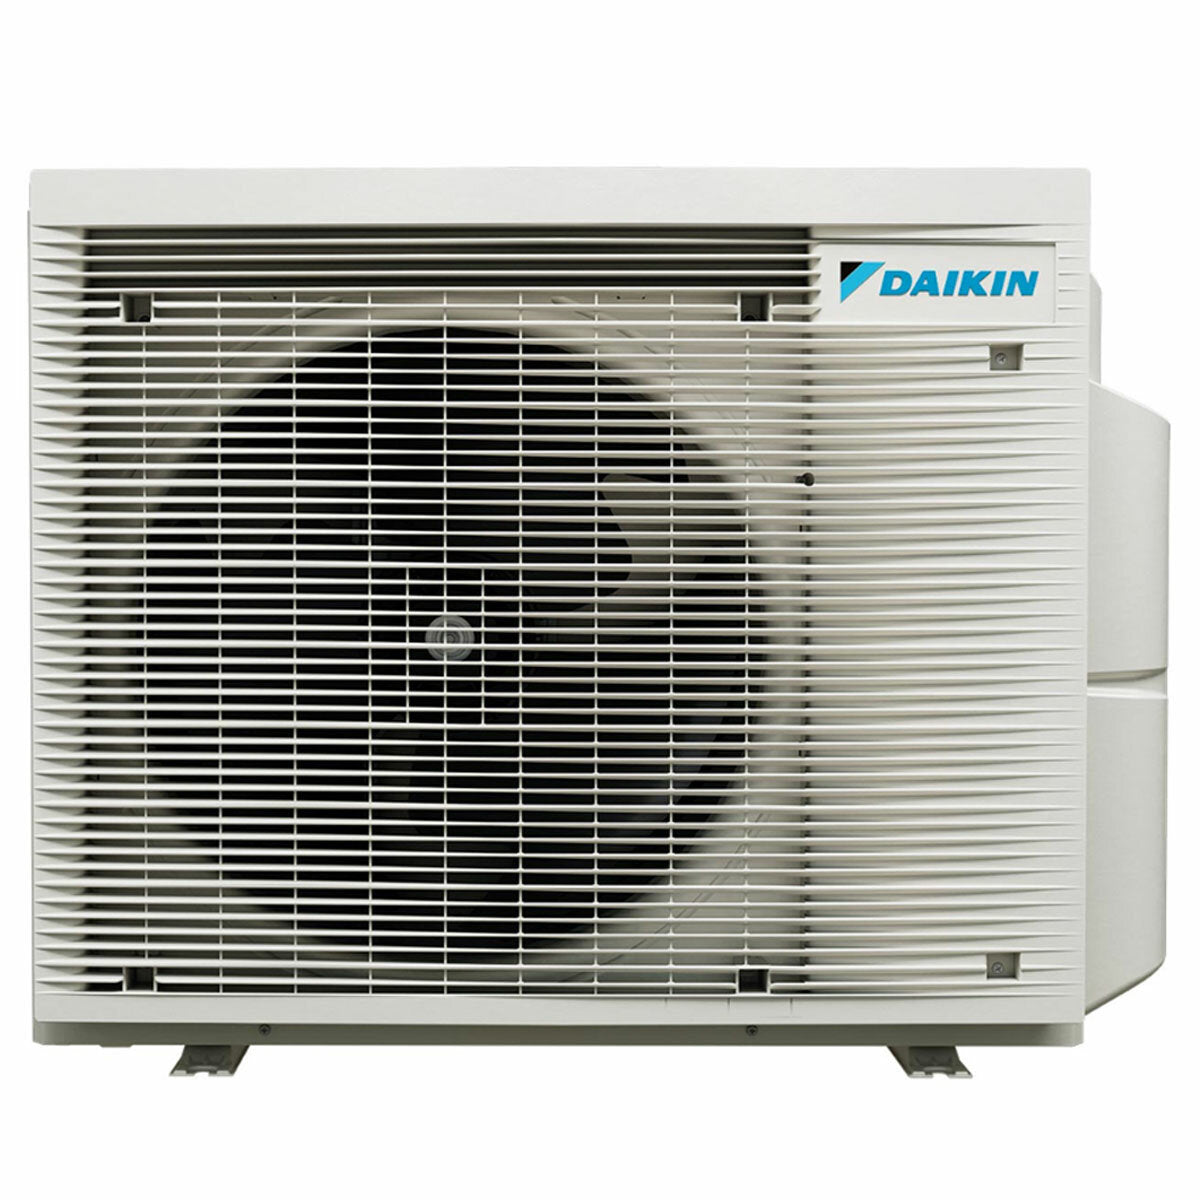 Daikin Emura 3 trial split air conditioner 12000+12000+18000 BTU inverter A+ wifi outdoor unit 7.4 kW Black